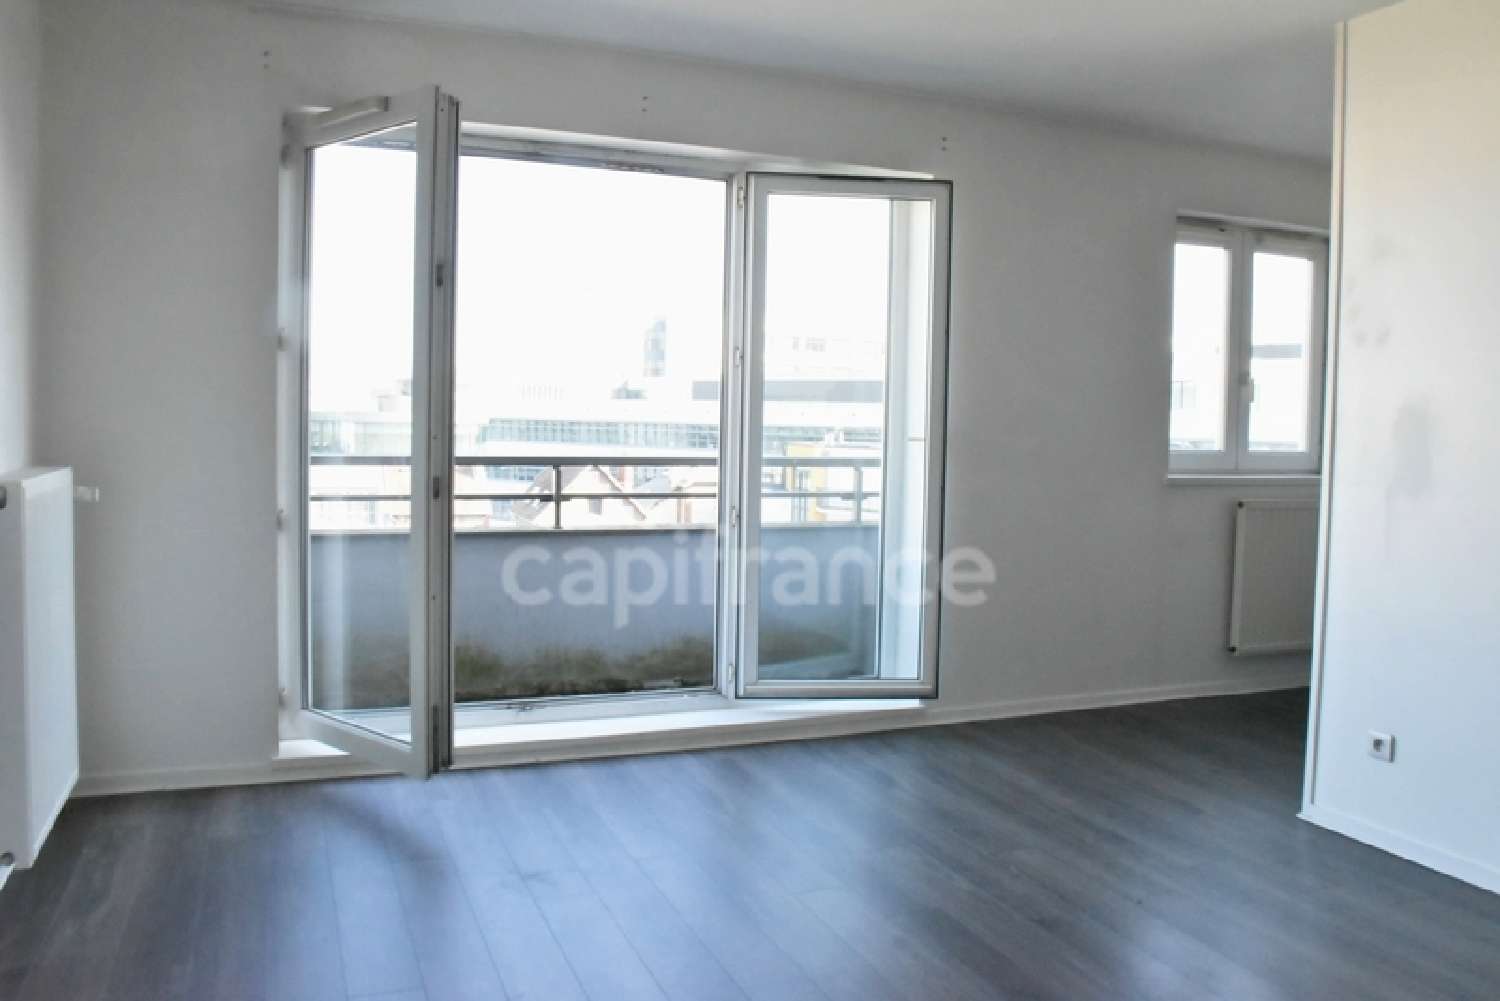 Rouen 76100 Seine-Maritime Wohnung/ Apartment Bild 6821688